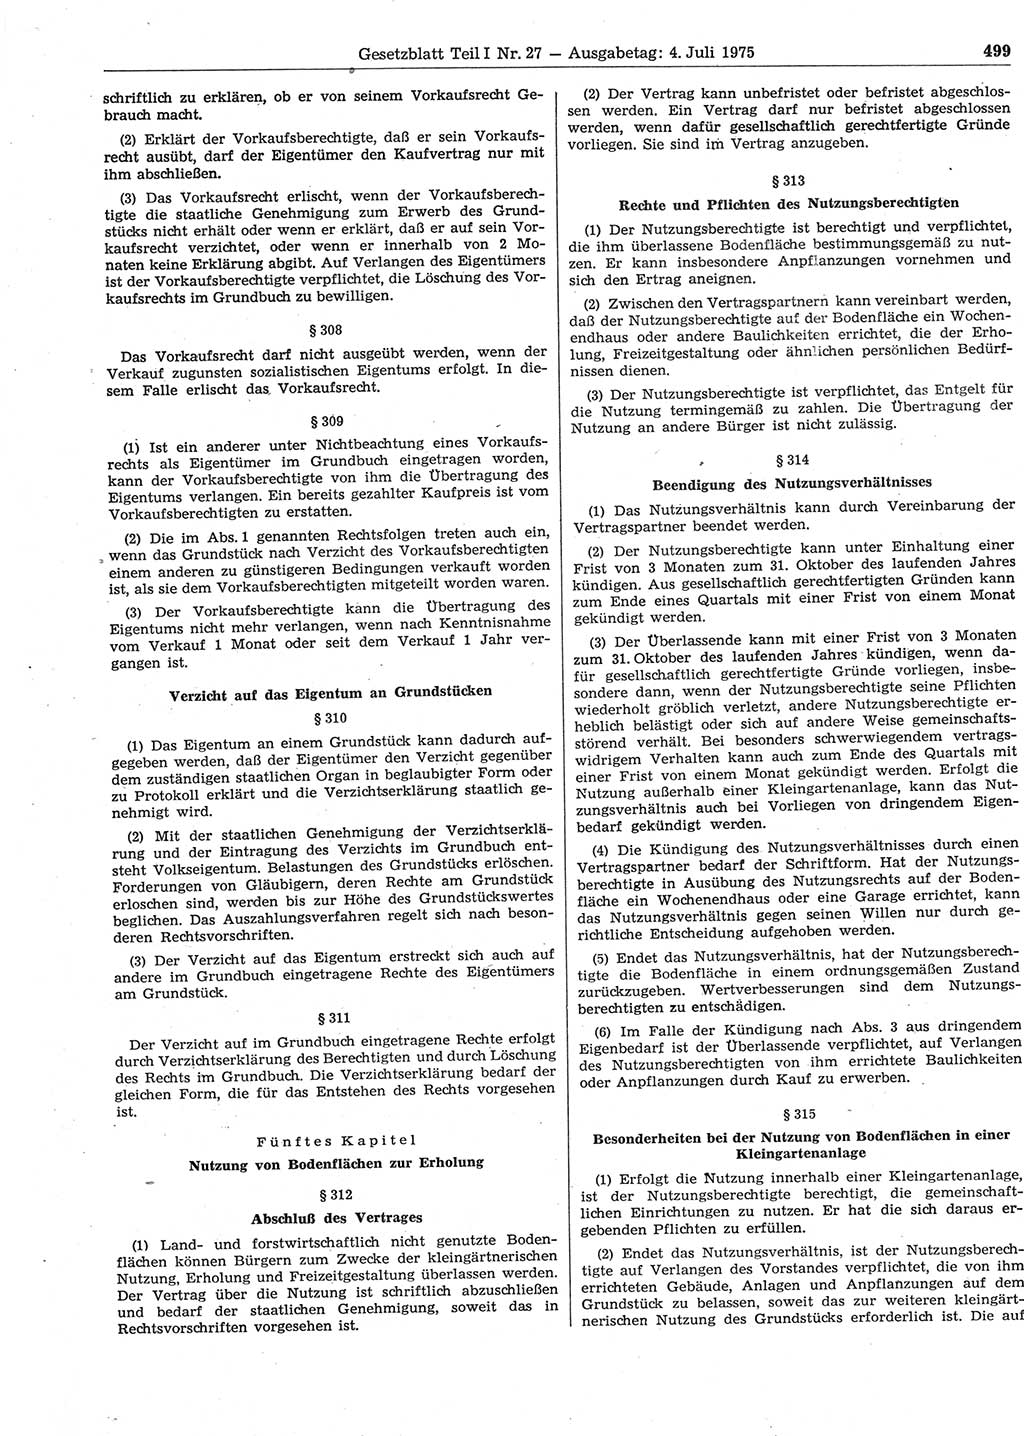 Gesetzblatt (GBl.) der Deutschen Demokratischen Republik (DDR) Teil Ⅰ 1975, Seite 499 (GBl. DDR Ⅰ 1975, S. 499)